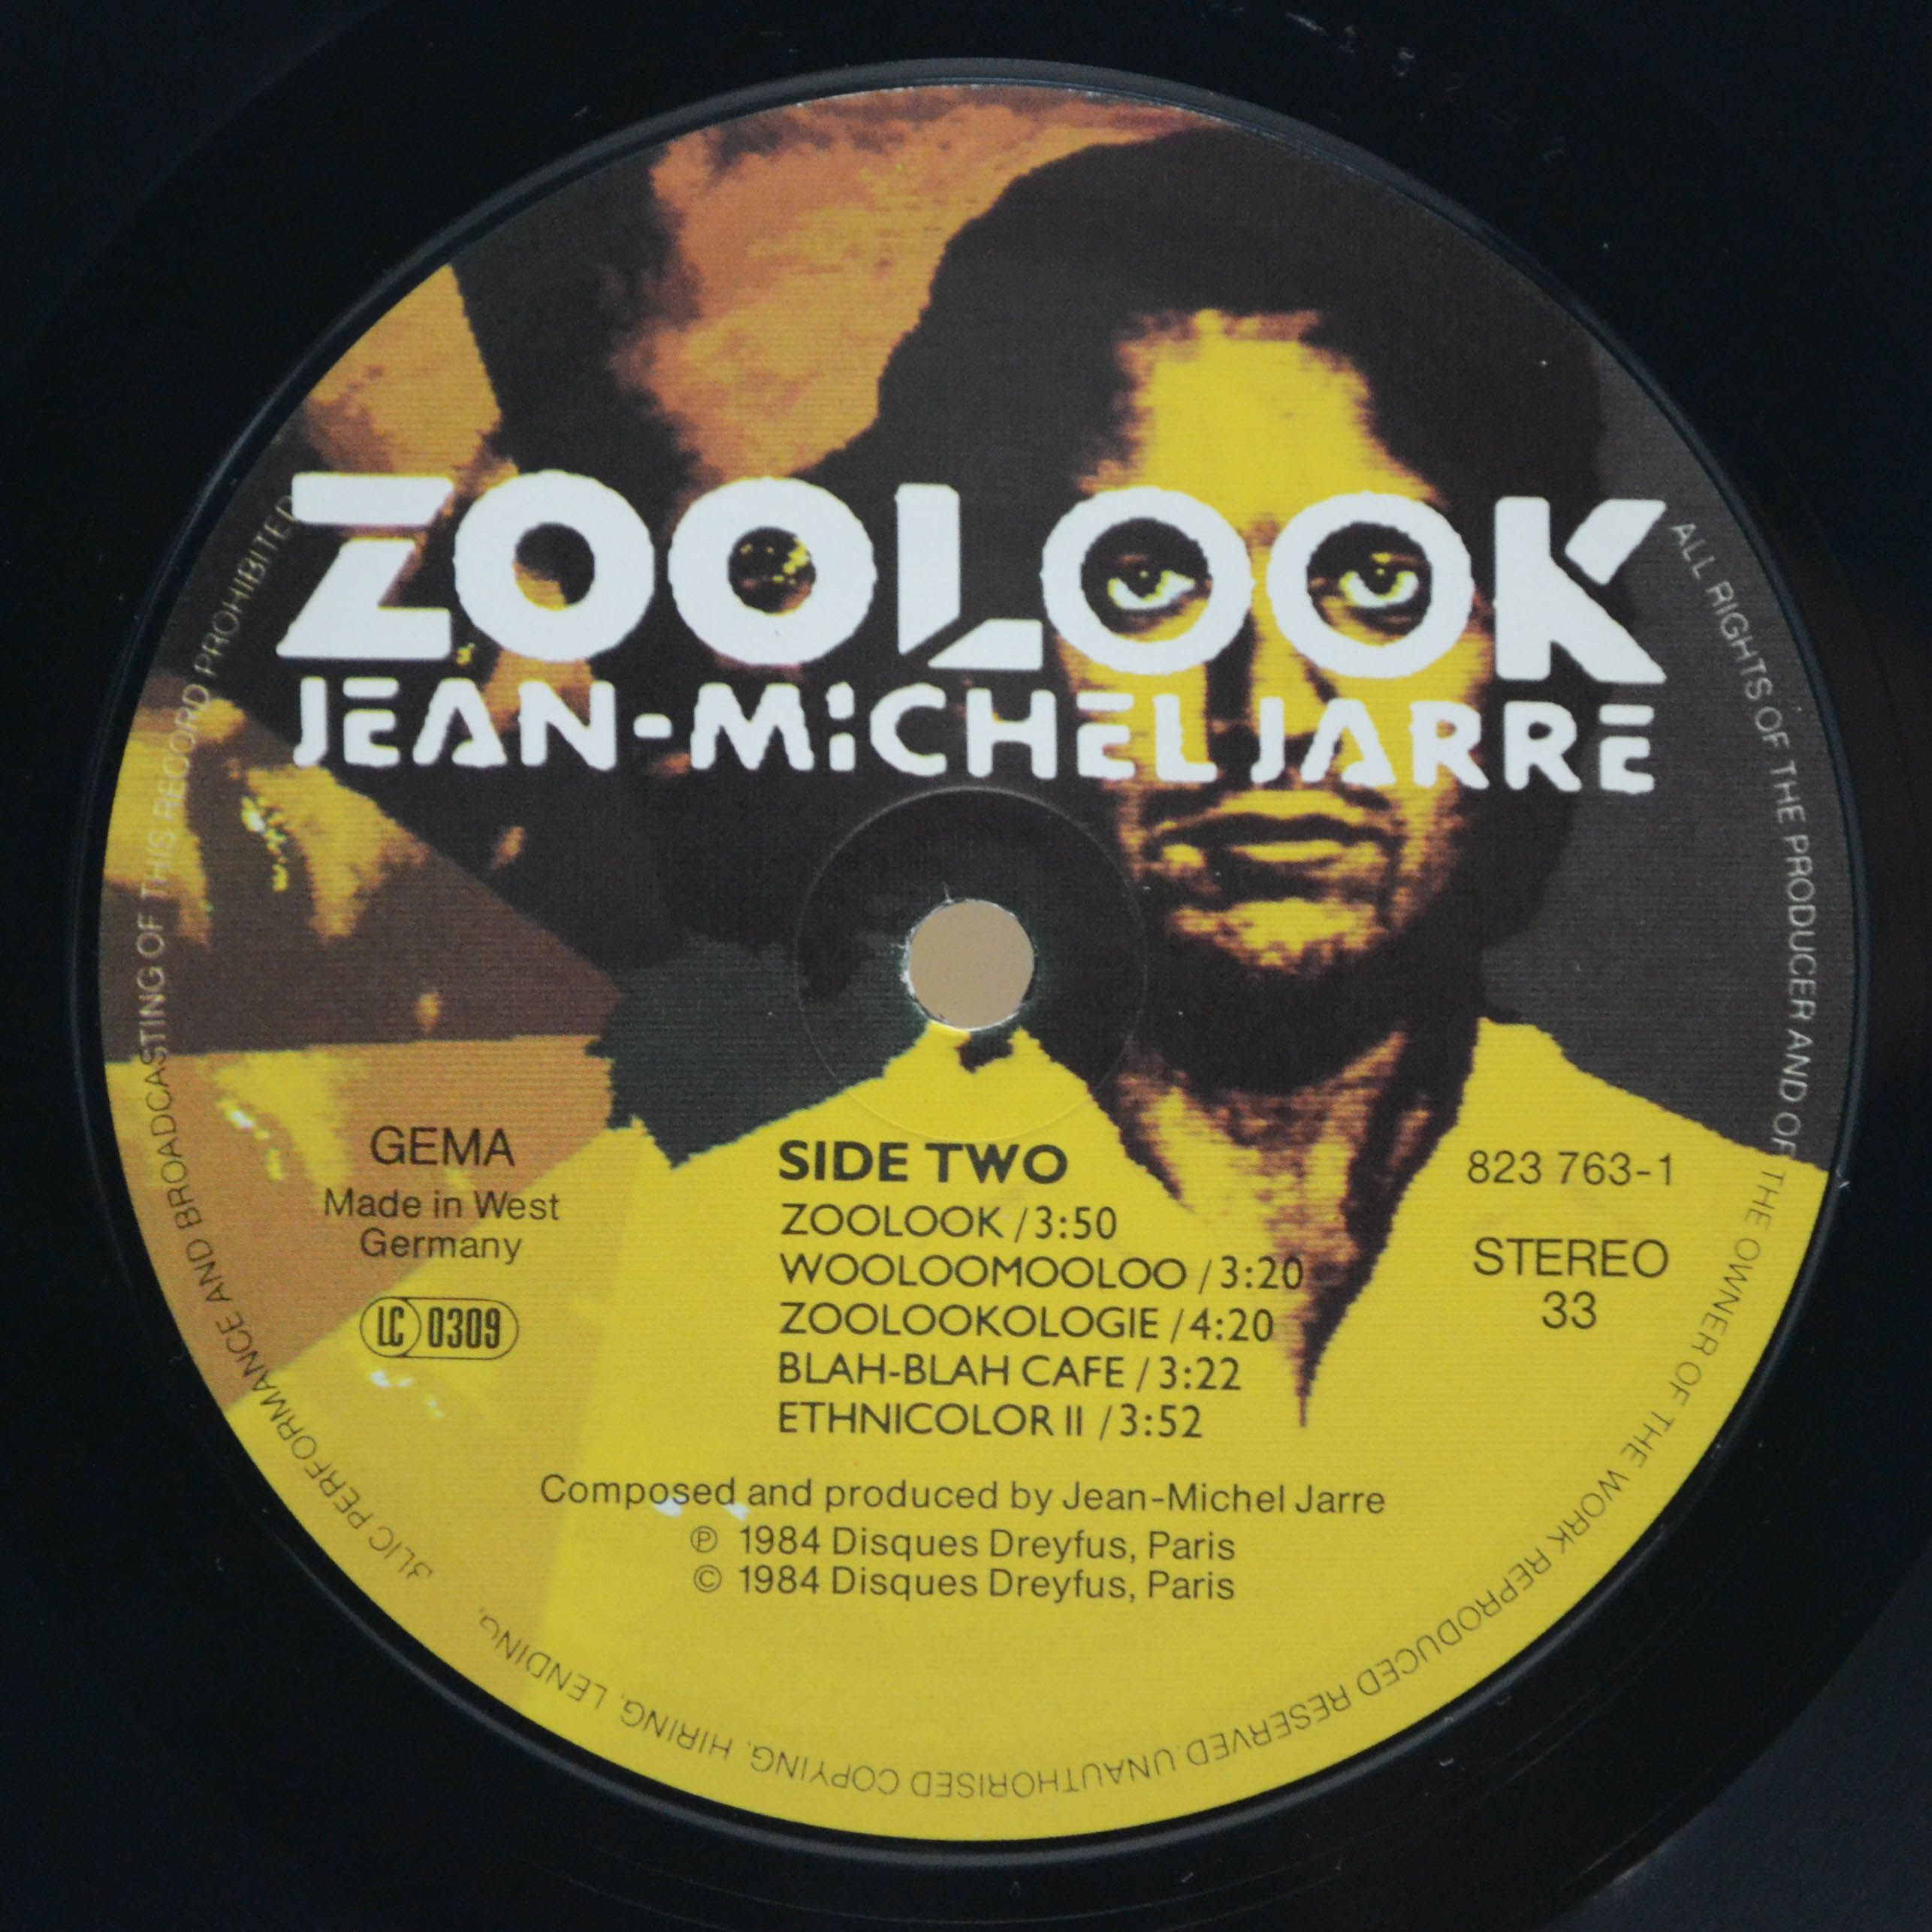 Jean-Michel Jarre — Zoolook, 1985